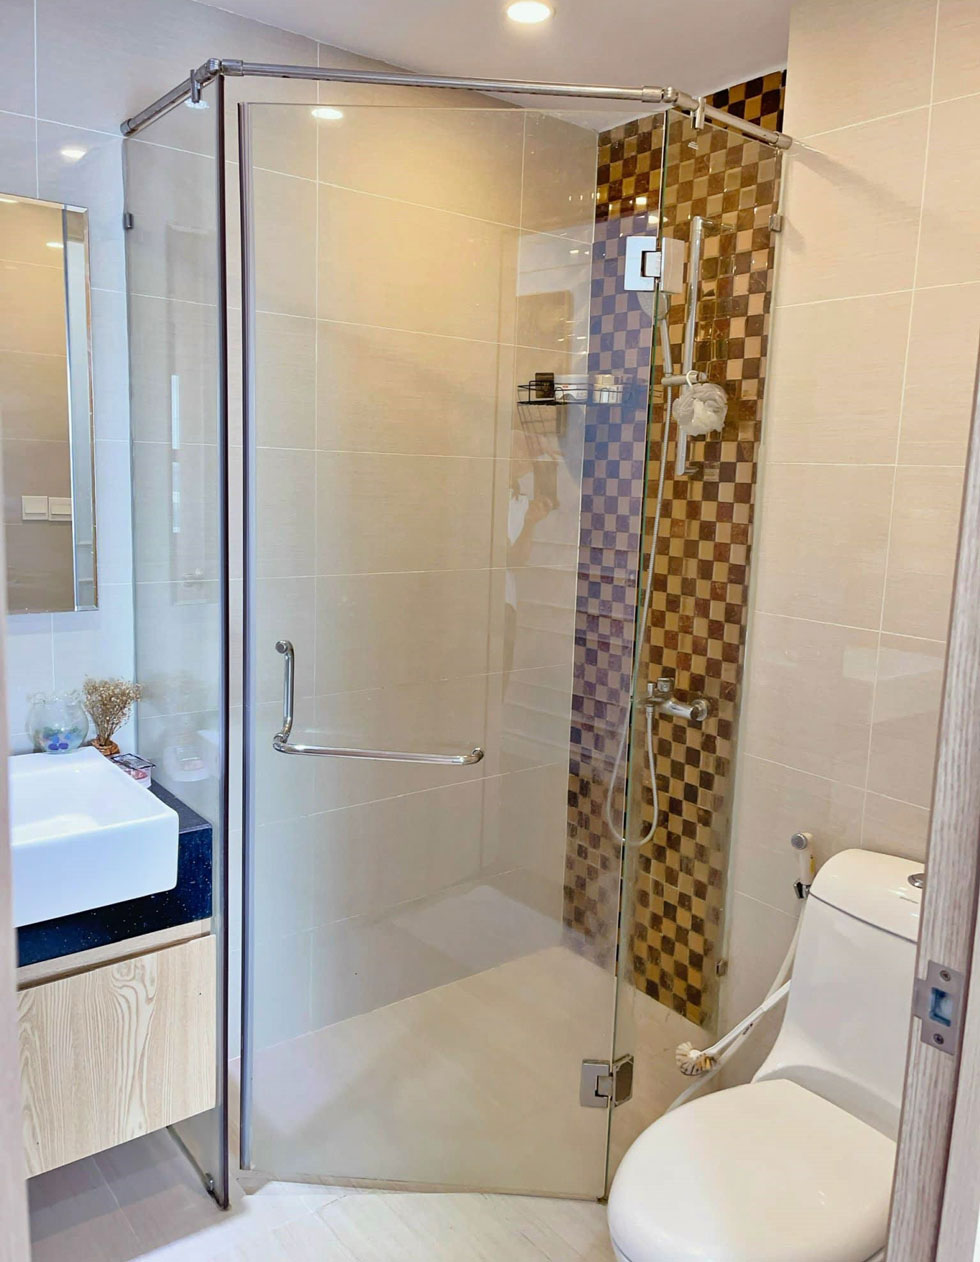 Nhà vệ sinh căn hộ chung cư Botanica Premier Hồng Hà 2 phòng ngủ 69m2